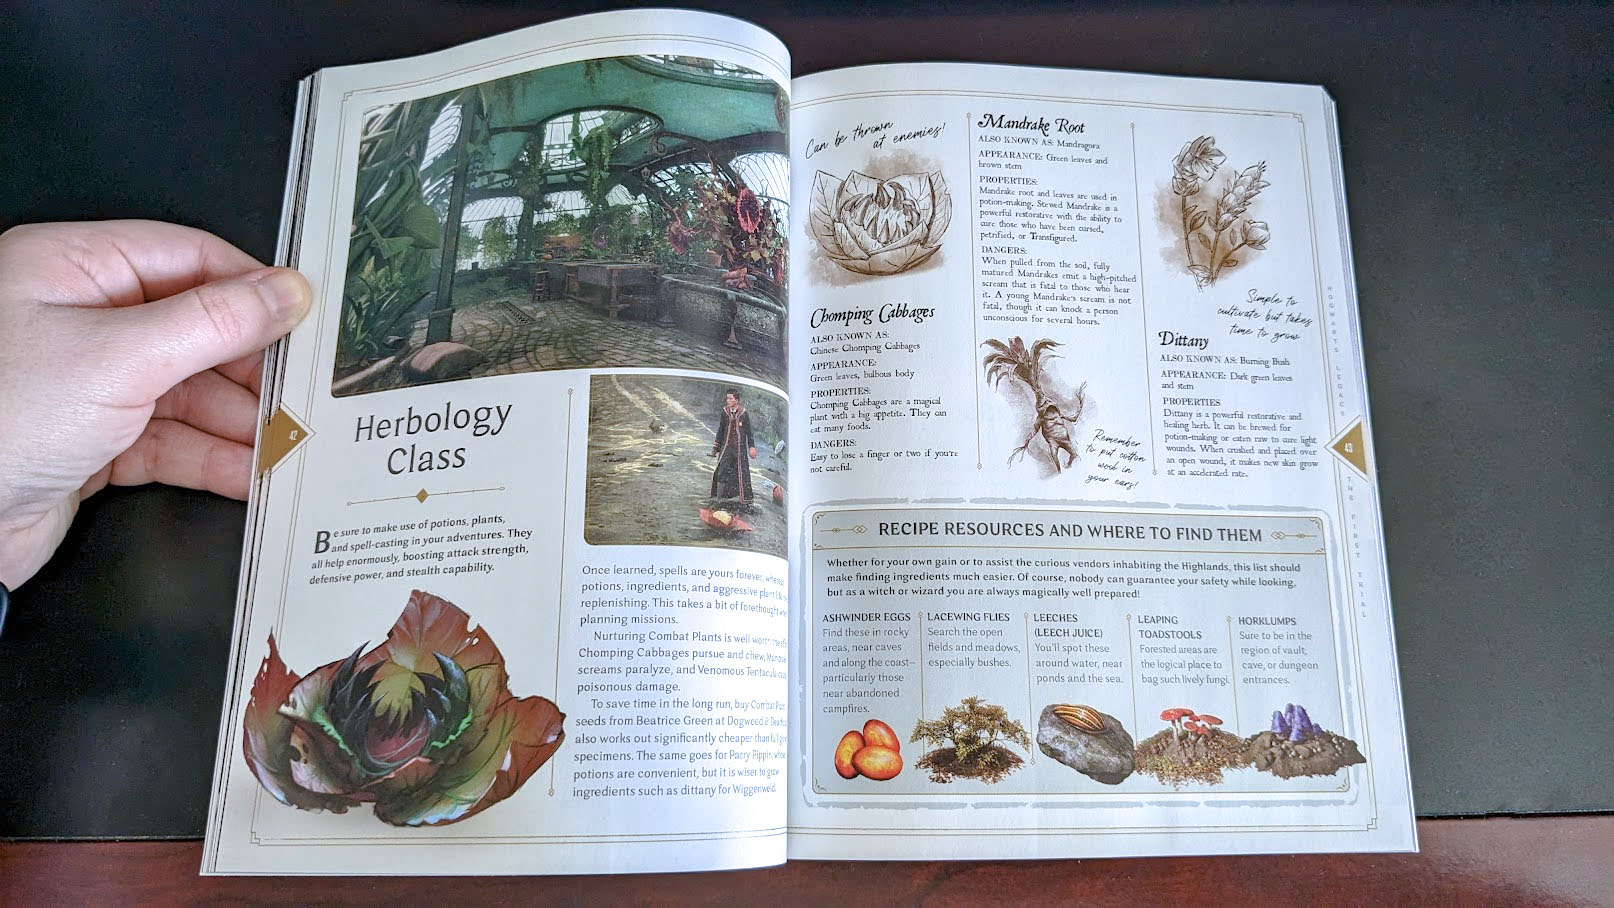 Hogwarts Legacy: The Official Game Guide - Páginas del curso de herboristería.